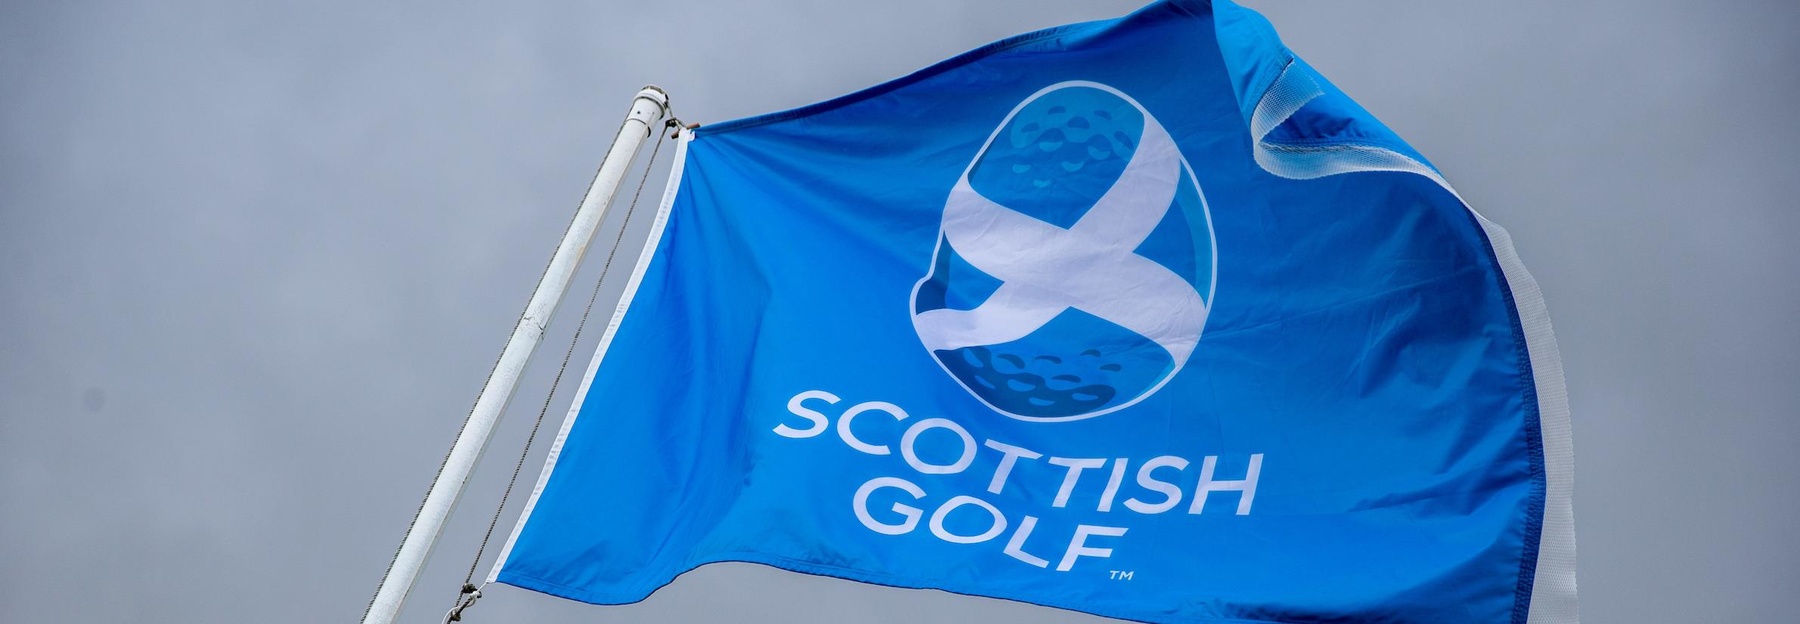 Scottish Golf crop- flag